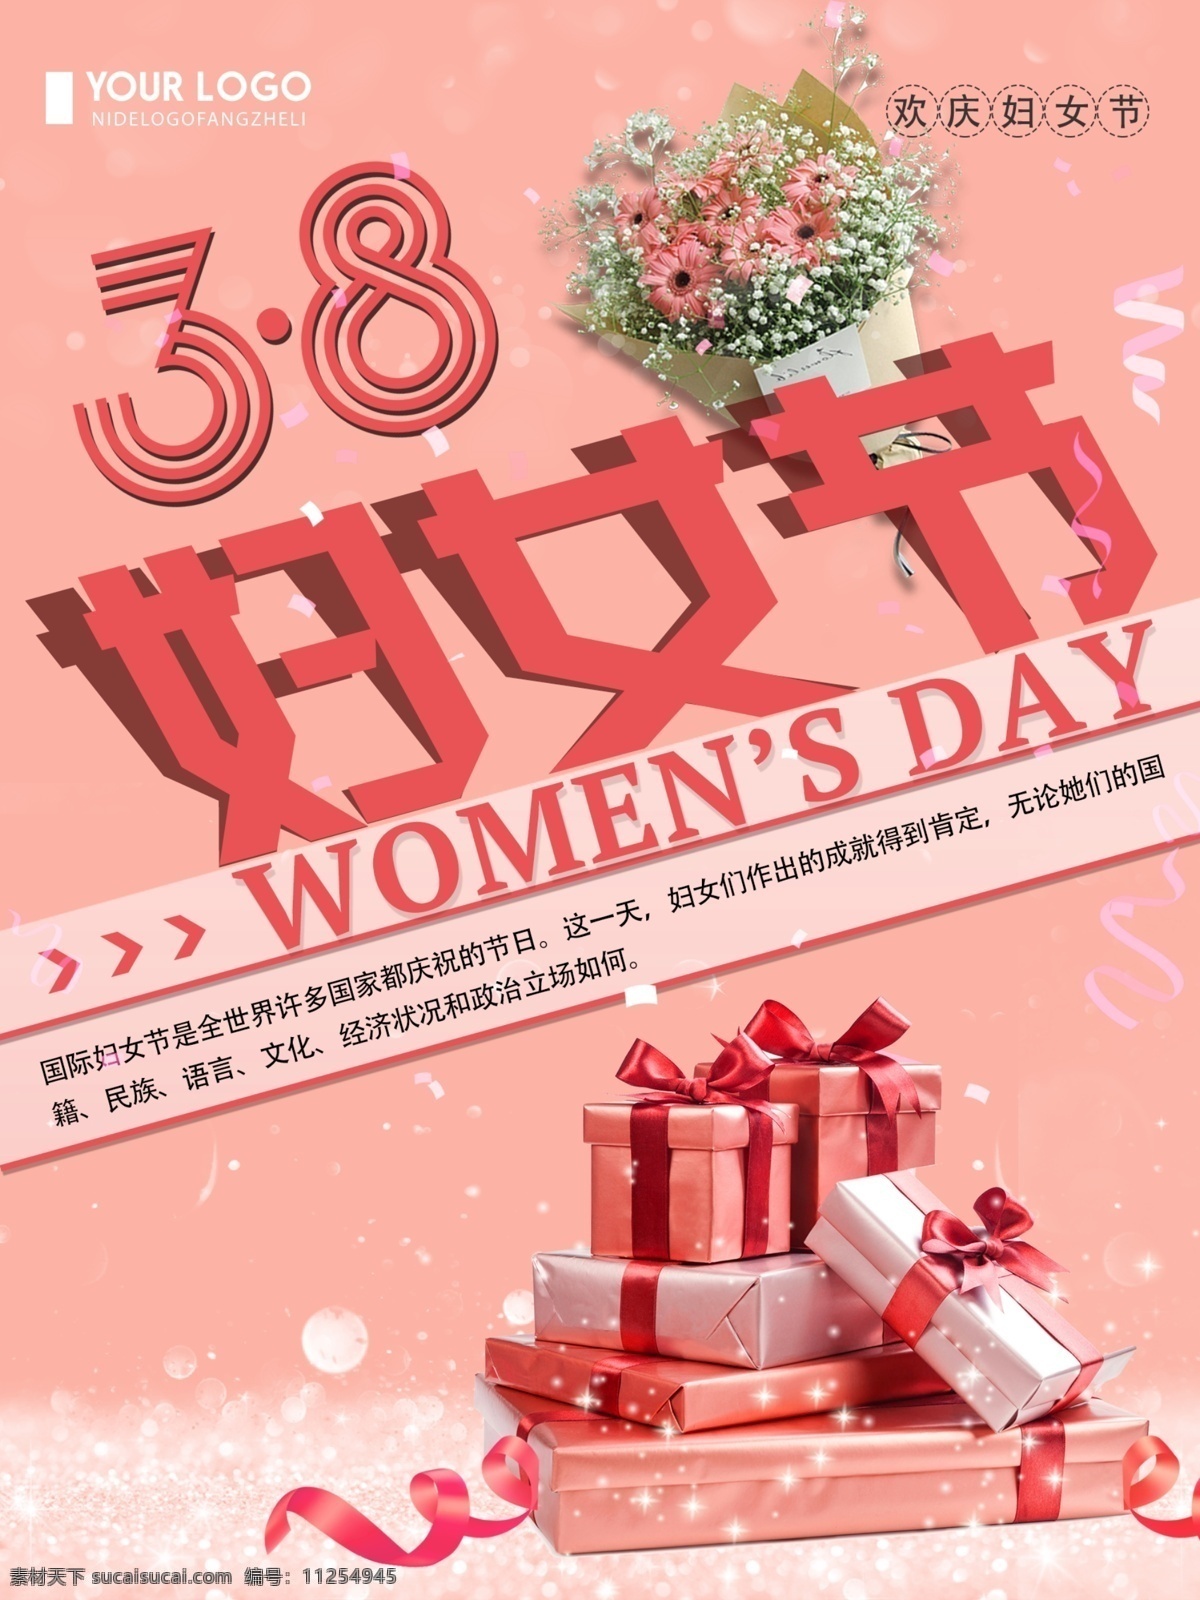 粉色 创意 简约 3.8 妇女节 宣传海报 国际妇女节 海报 清新